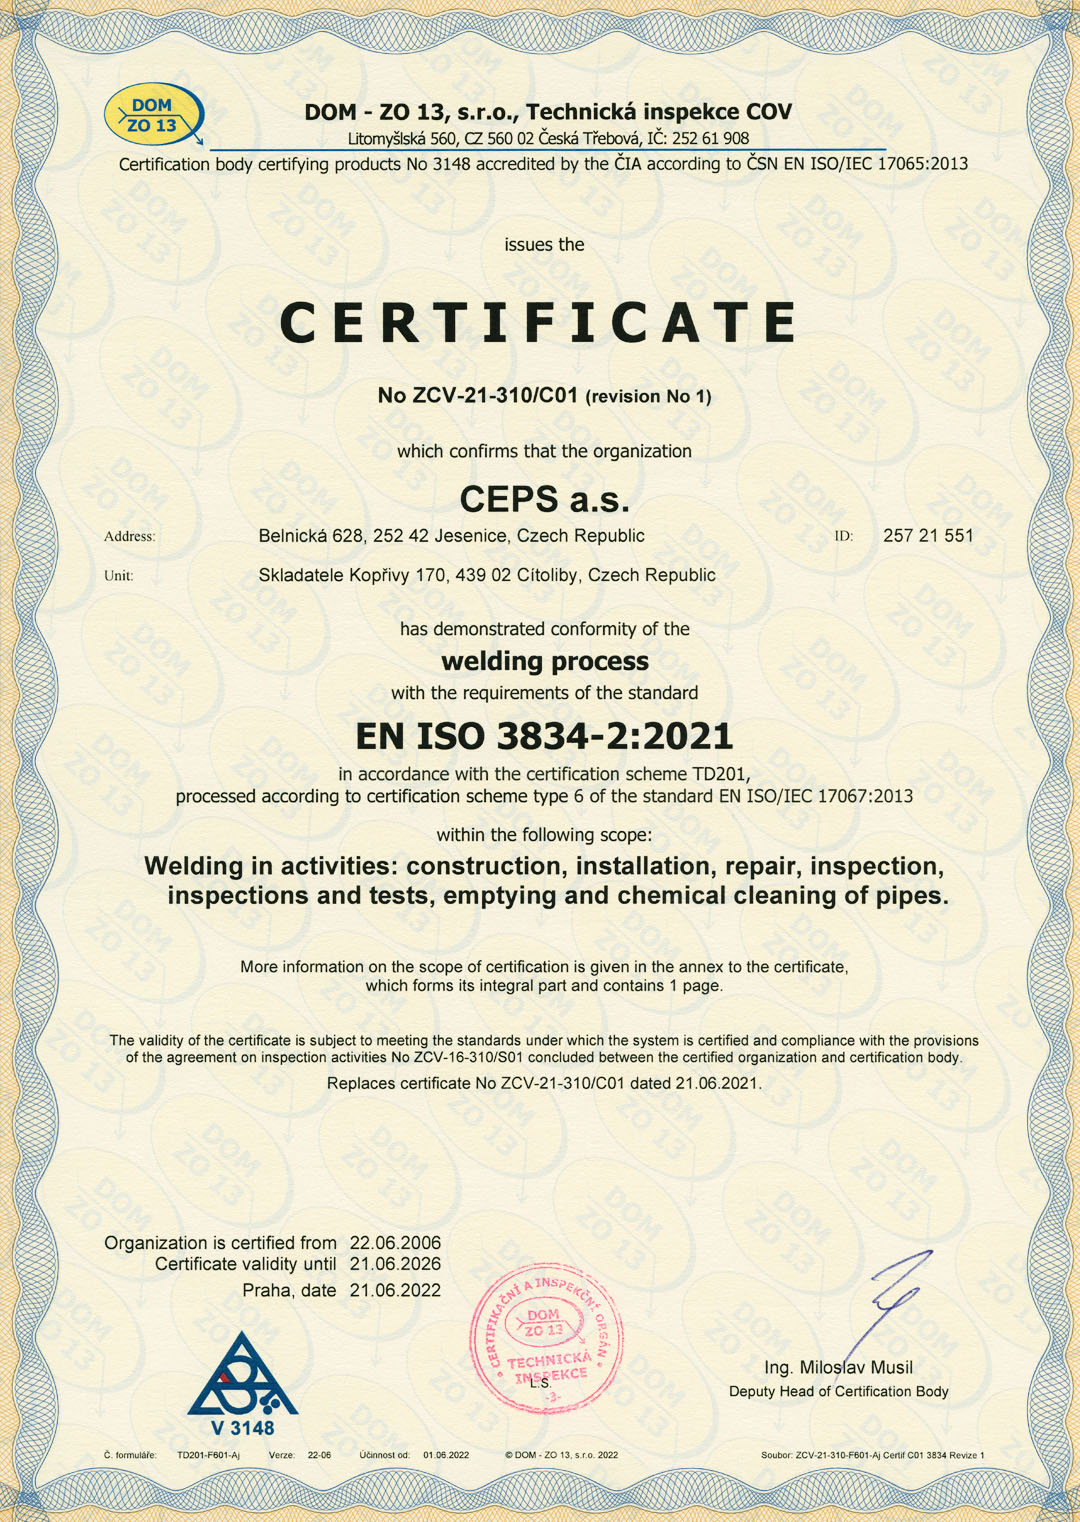 EN ISO 3834-2:2021 Welding Process Certificate (Certificate No. ZCV-21-310/C01 revision no. 1)